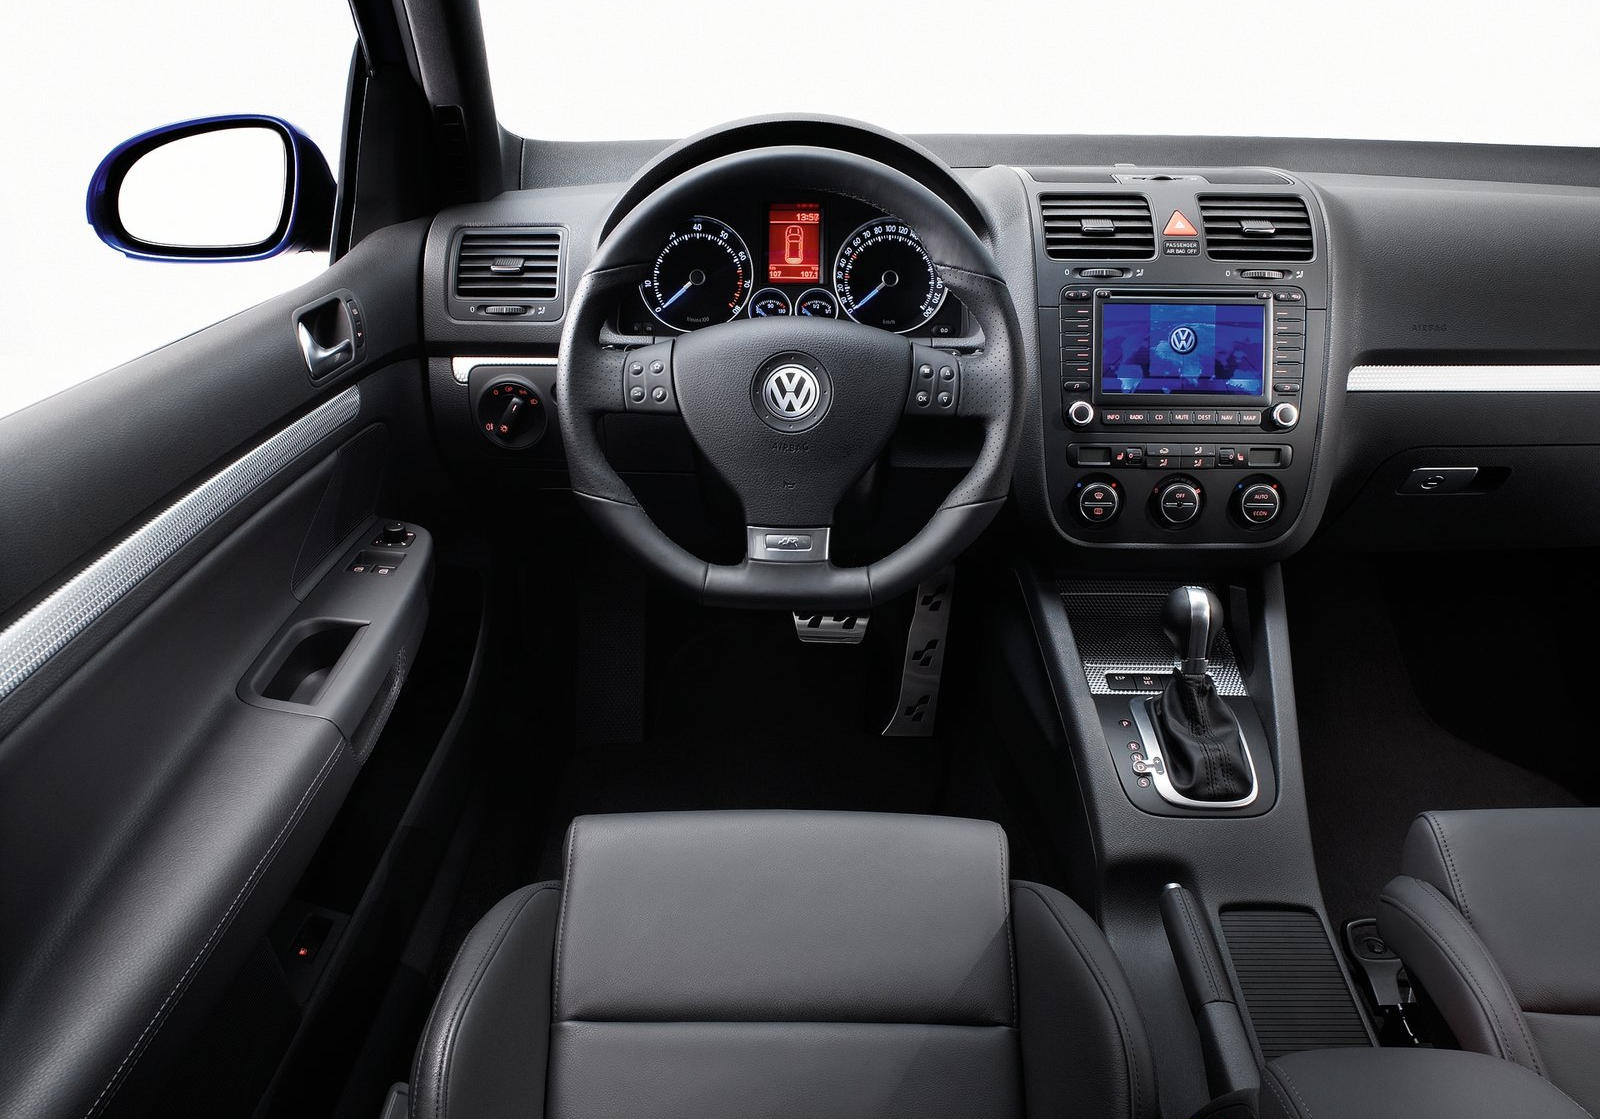 2008 Volkswagen R32 Steering Wheel